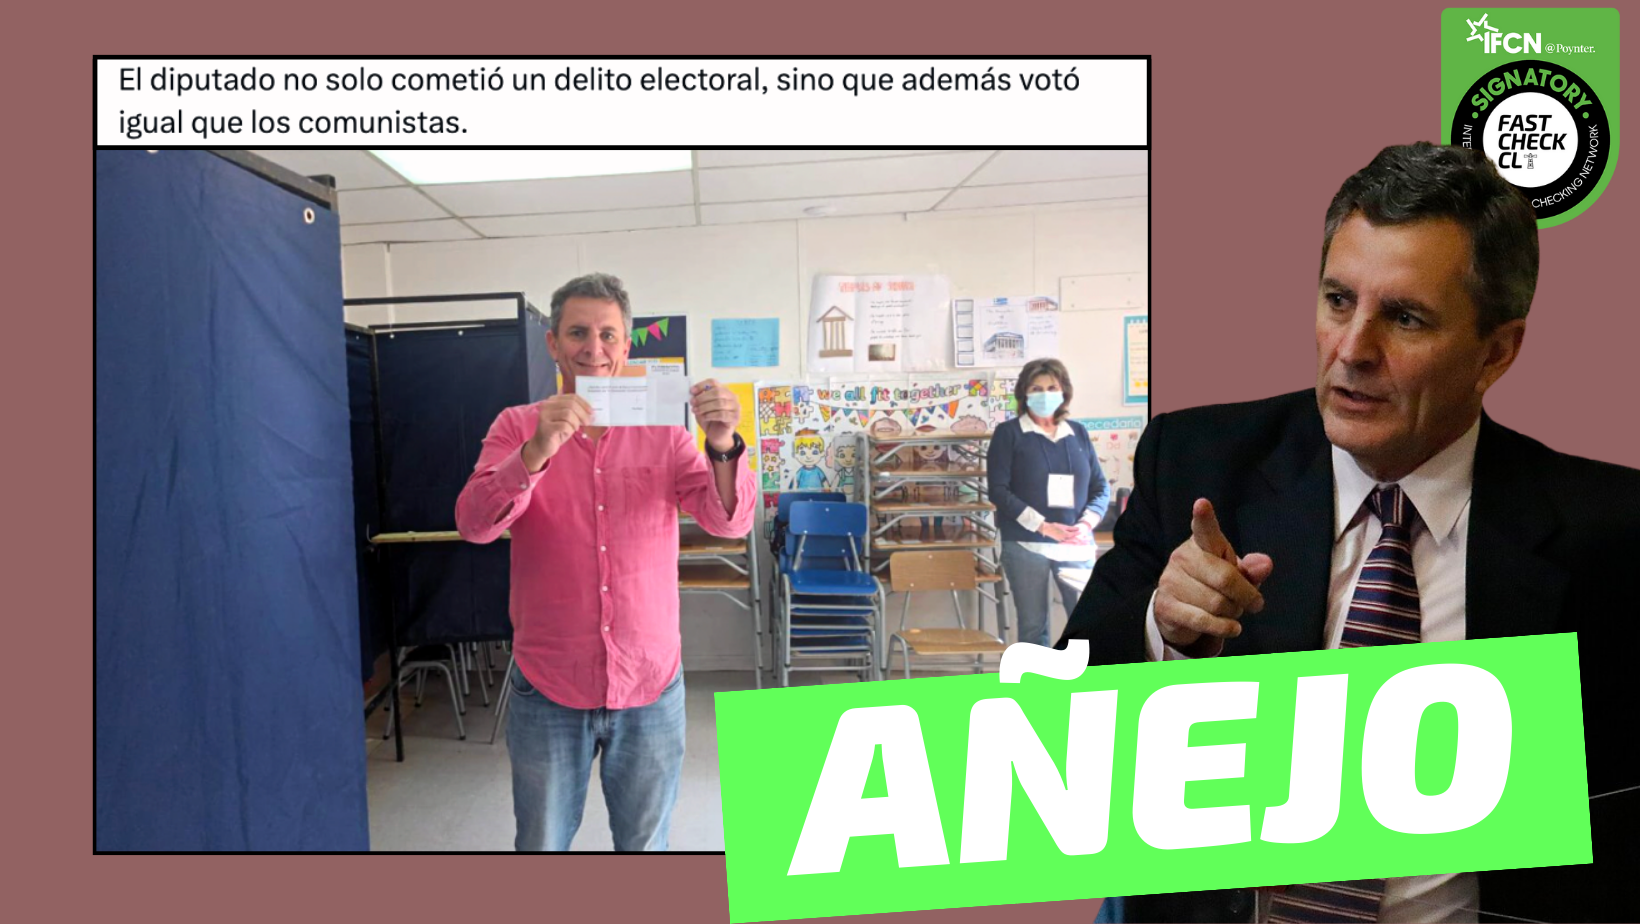 You are currently viewing (Imagen) El diputado Gonzalo de la Carrera mostr贸 su voto: #A帽ejo